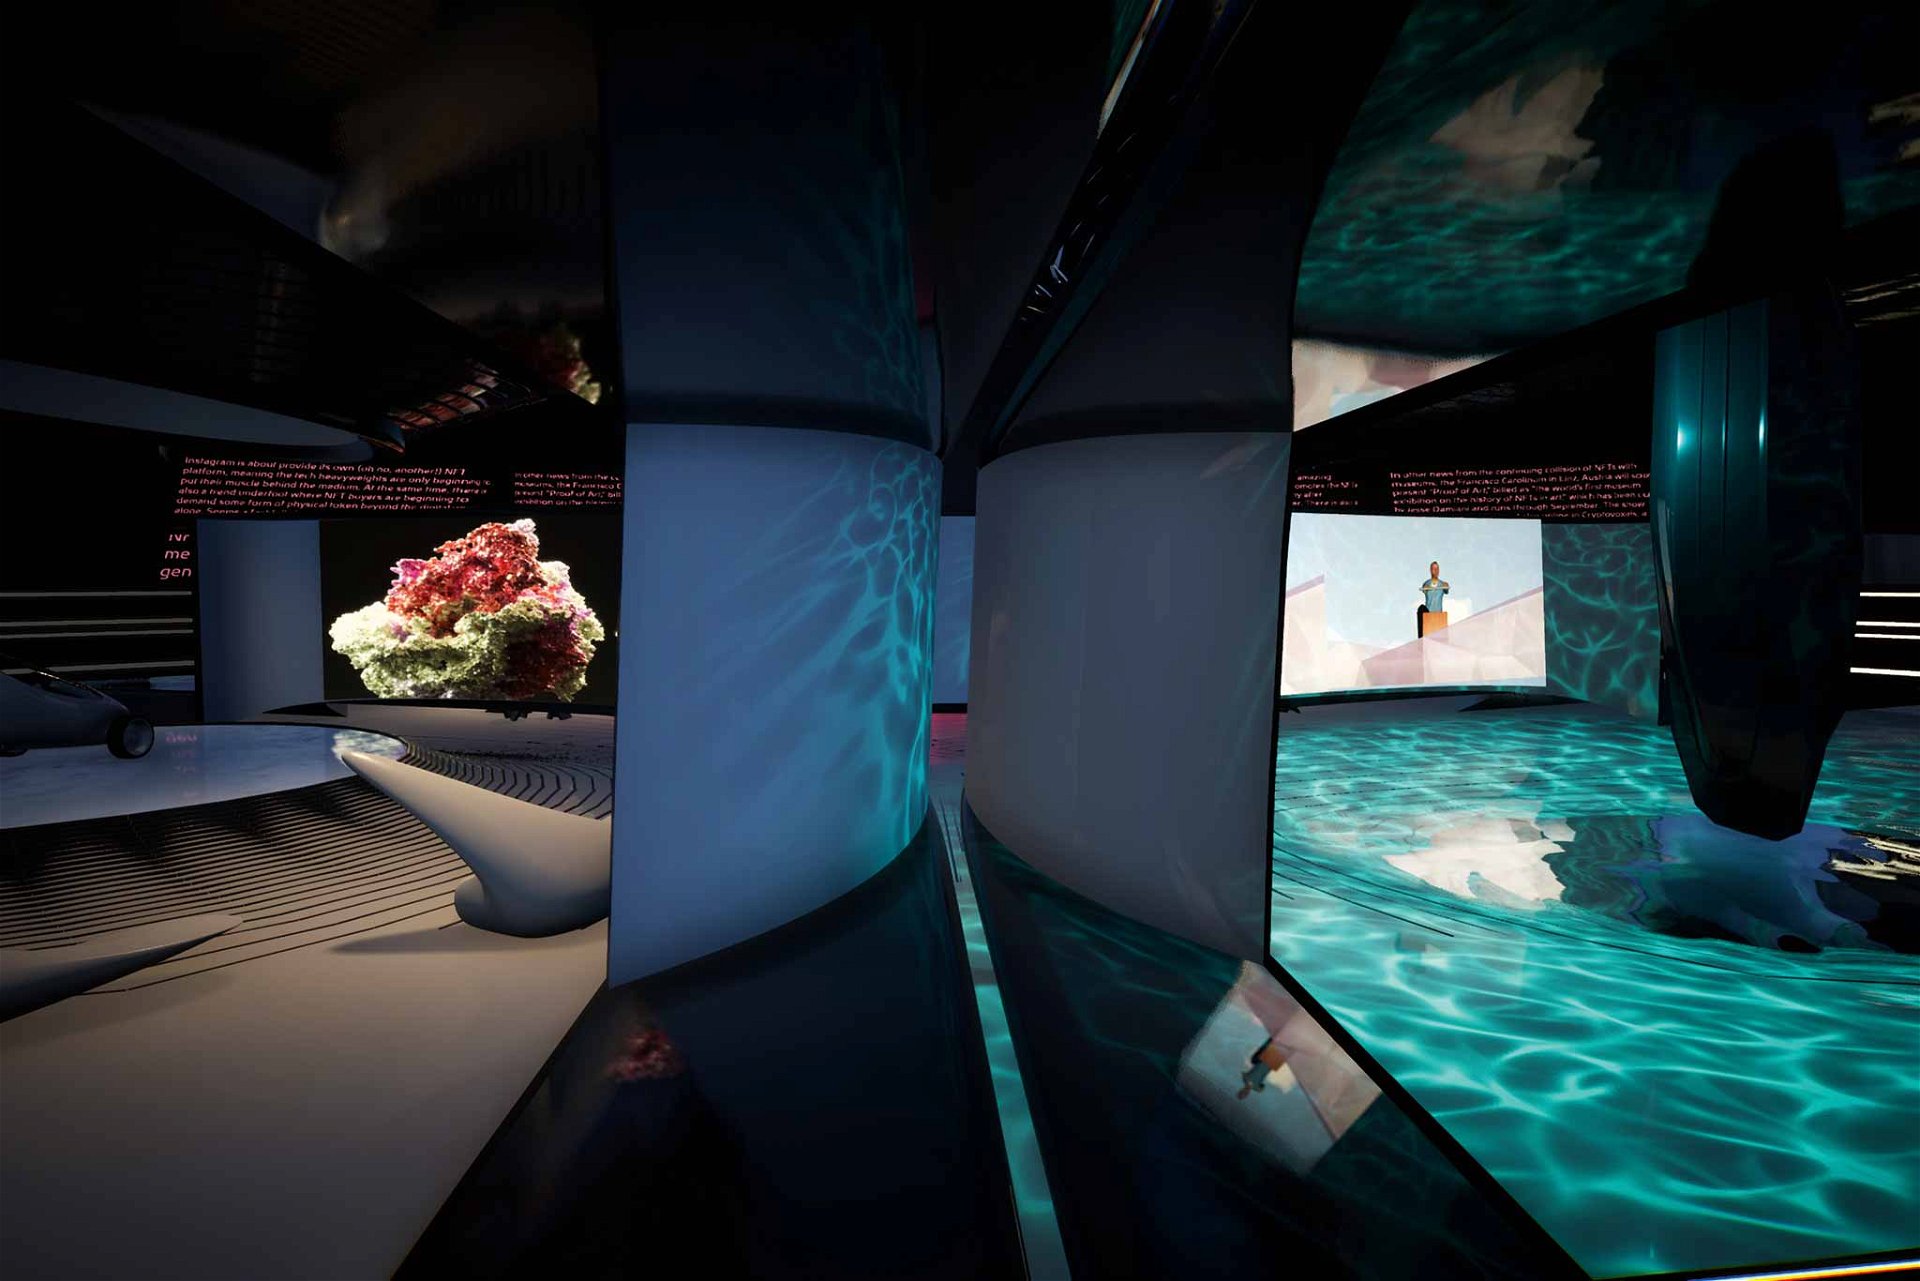 Showroom für Brillenträger Die virtuelle Galerie »NFTism« wurde von Zaha Hadid Architects in Kooperation mit dem Medienkünstler Kenny Schachter entwickelt. zaha-hadid.com